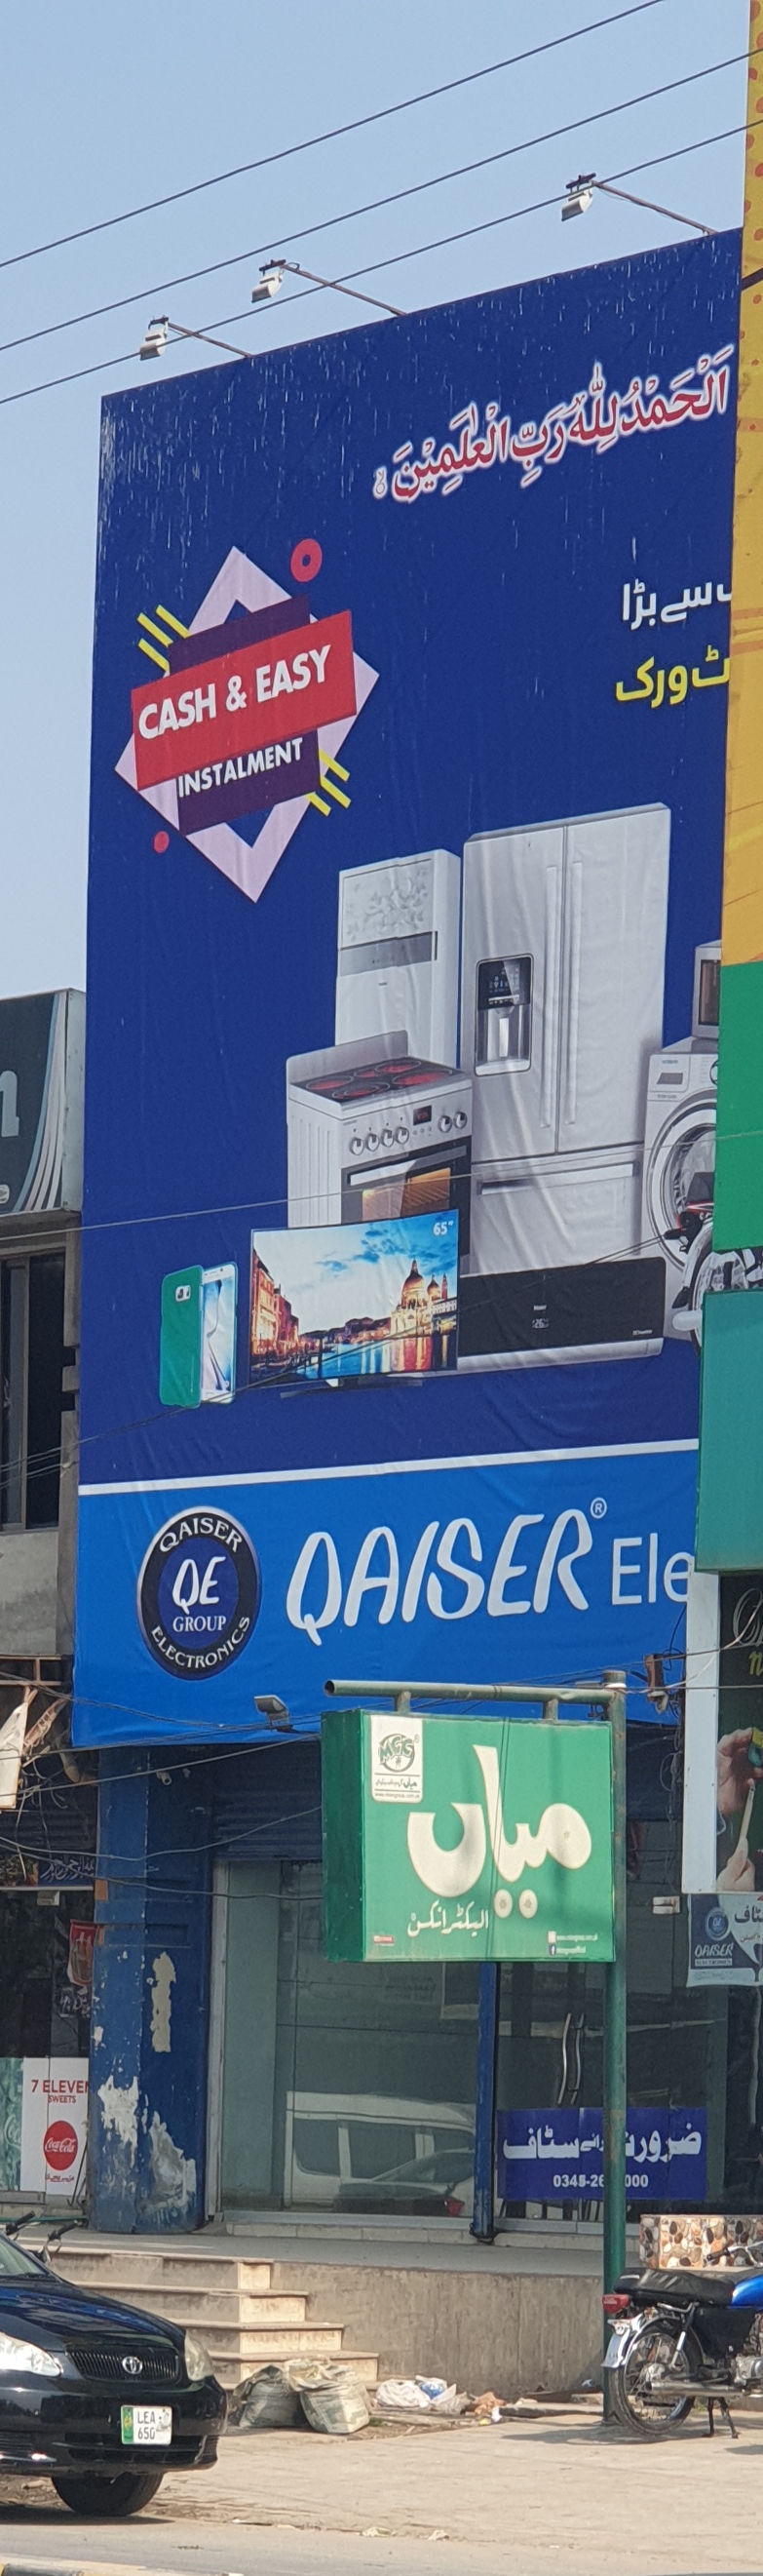 Qaiser Electronics